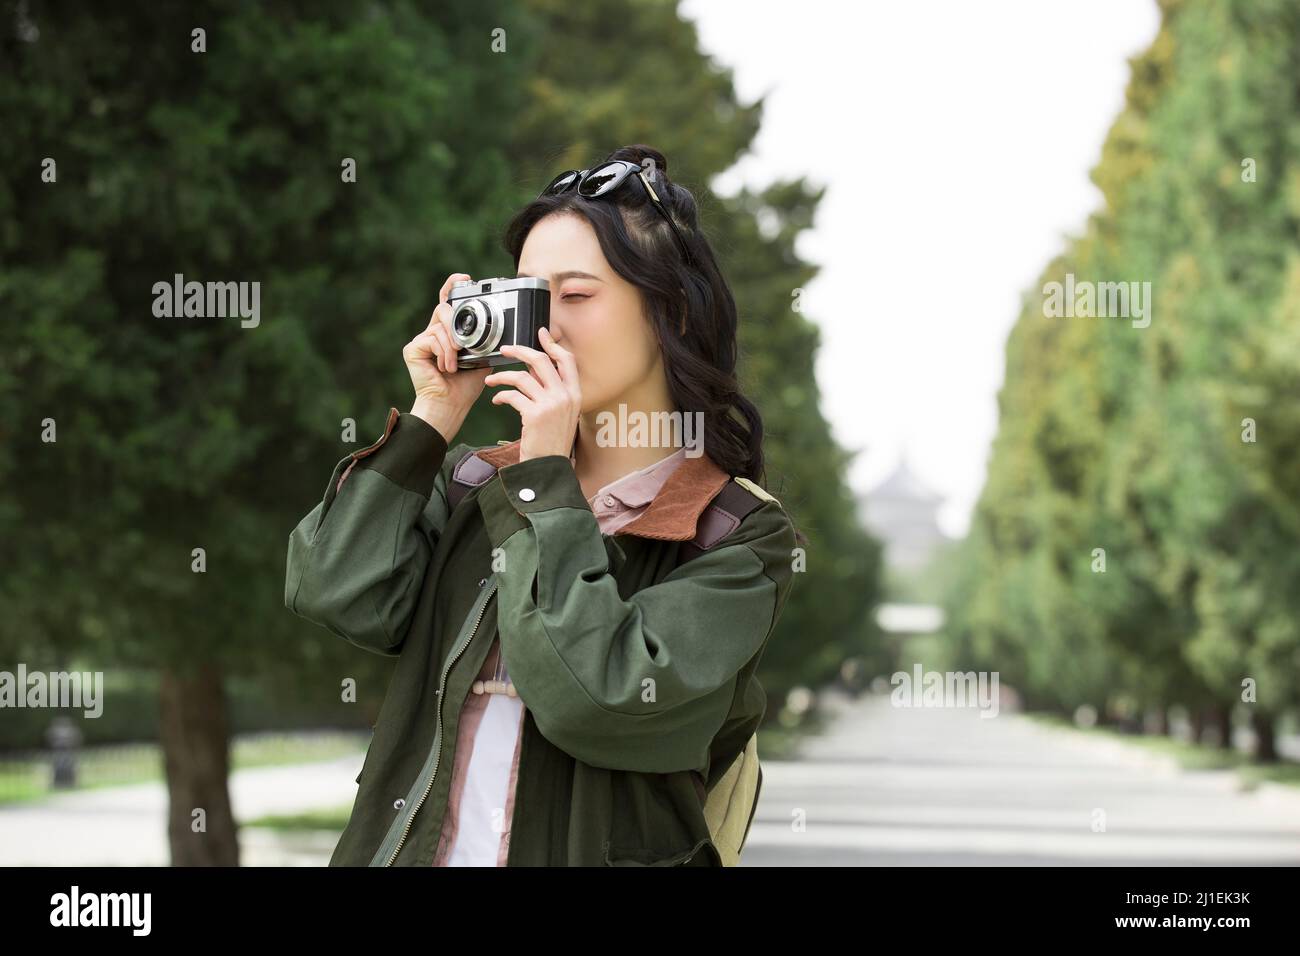 Junge weibliche Touristen, die Fotos in einem von Bäumen gesäumten Park machen - Stock Photo Stockfoto